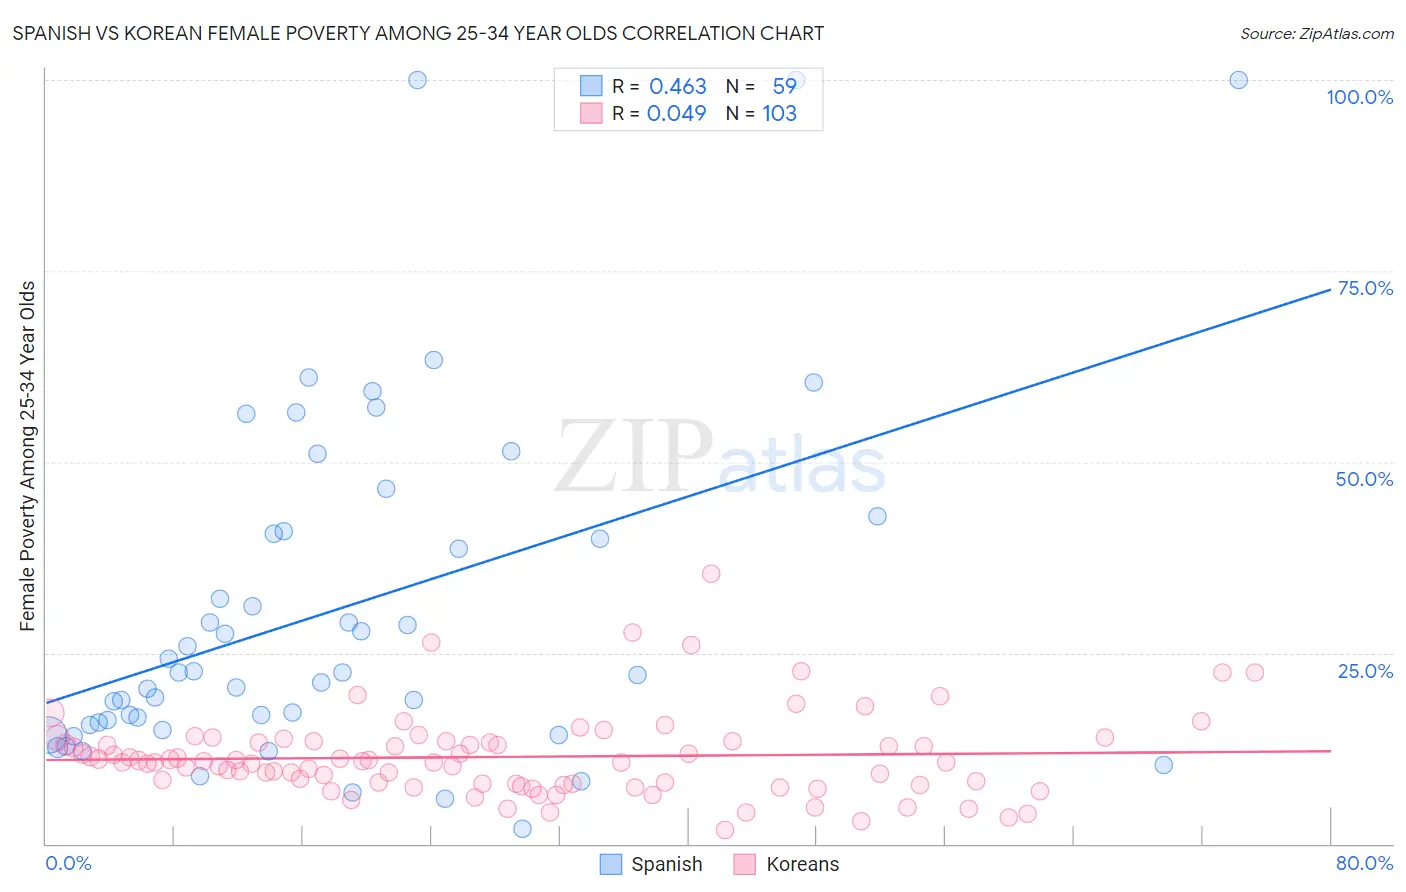 Spanish vs Korean Female Poverty Among 25-34 Year Olds